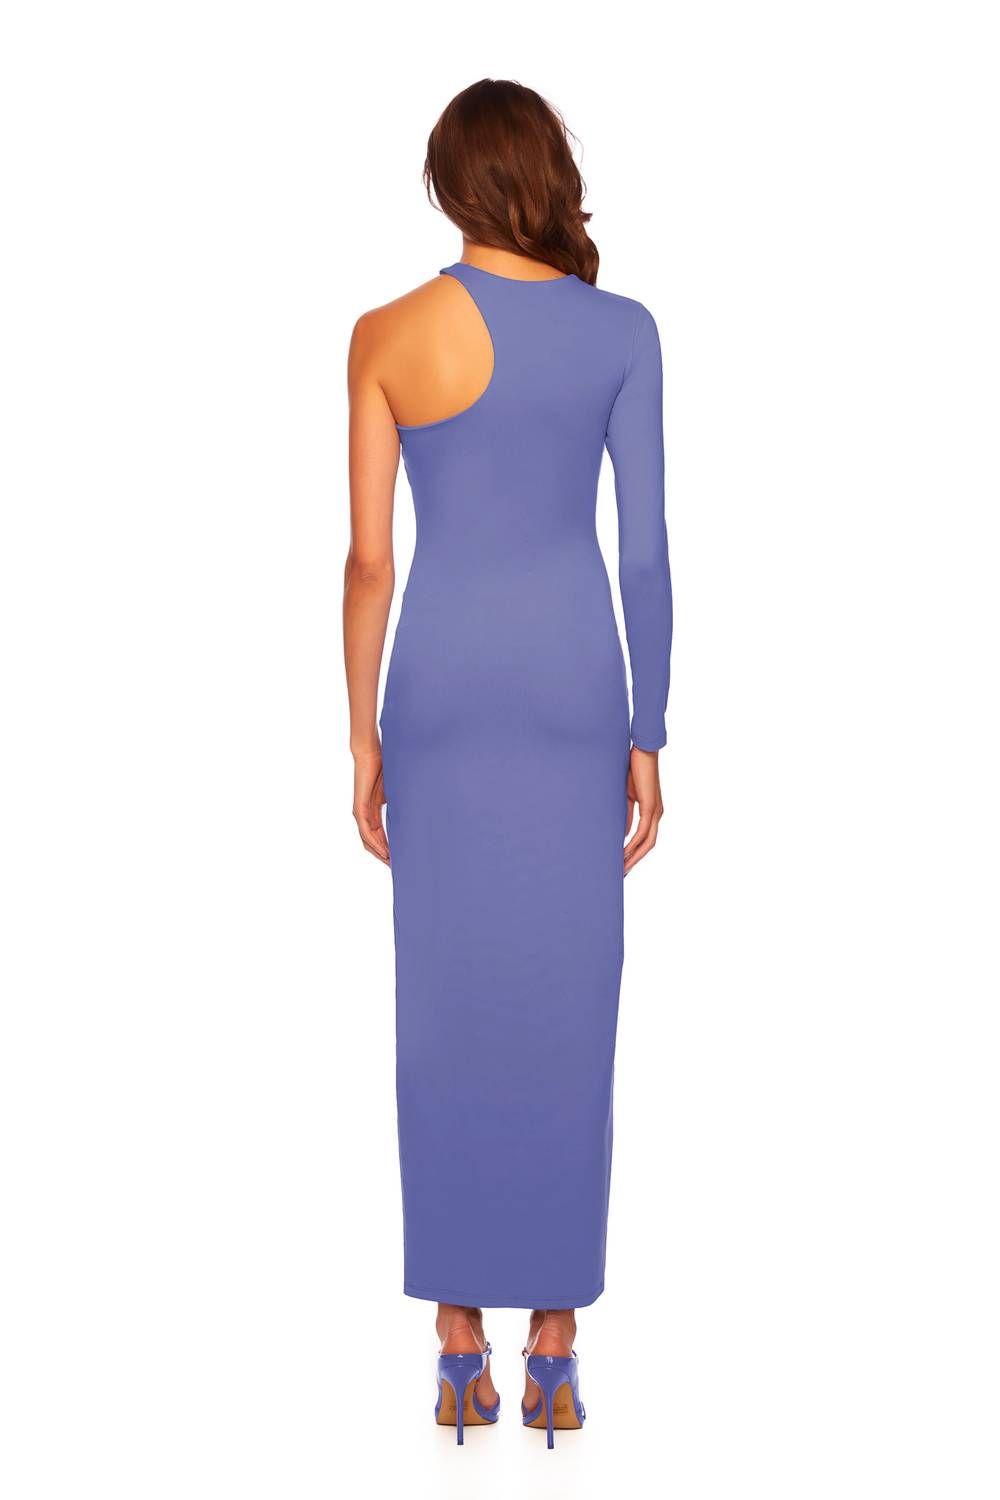 Style 1-2293391891-3855 Susana Monaco Size XS Purple Side Slit Dress on Queenly